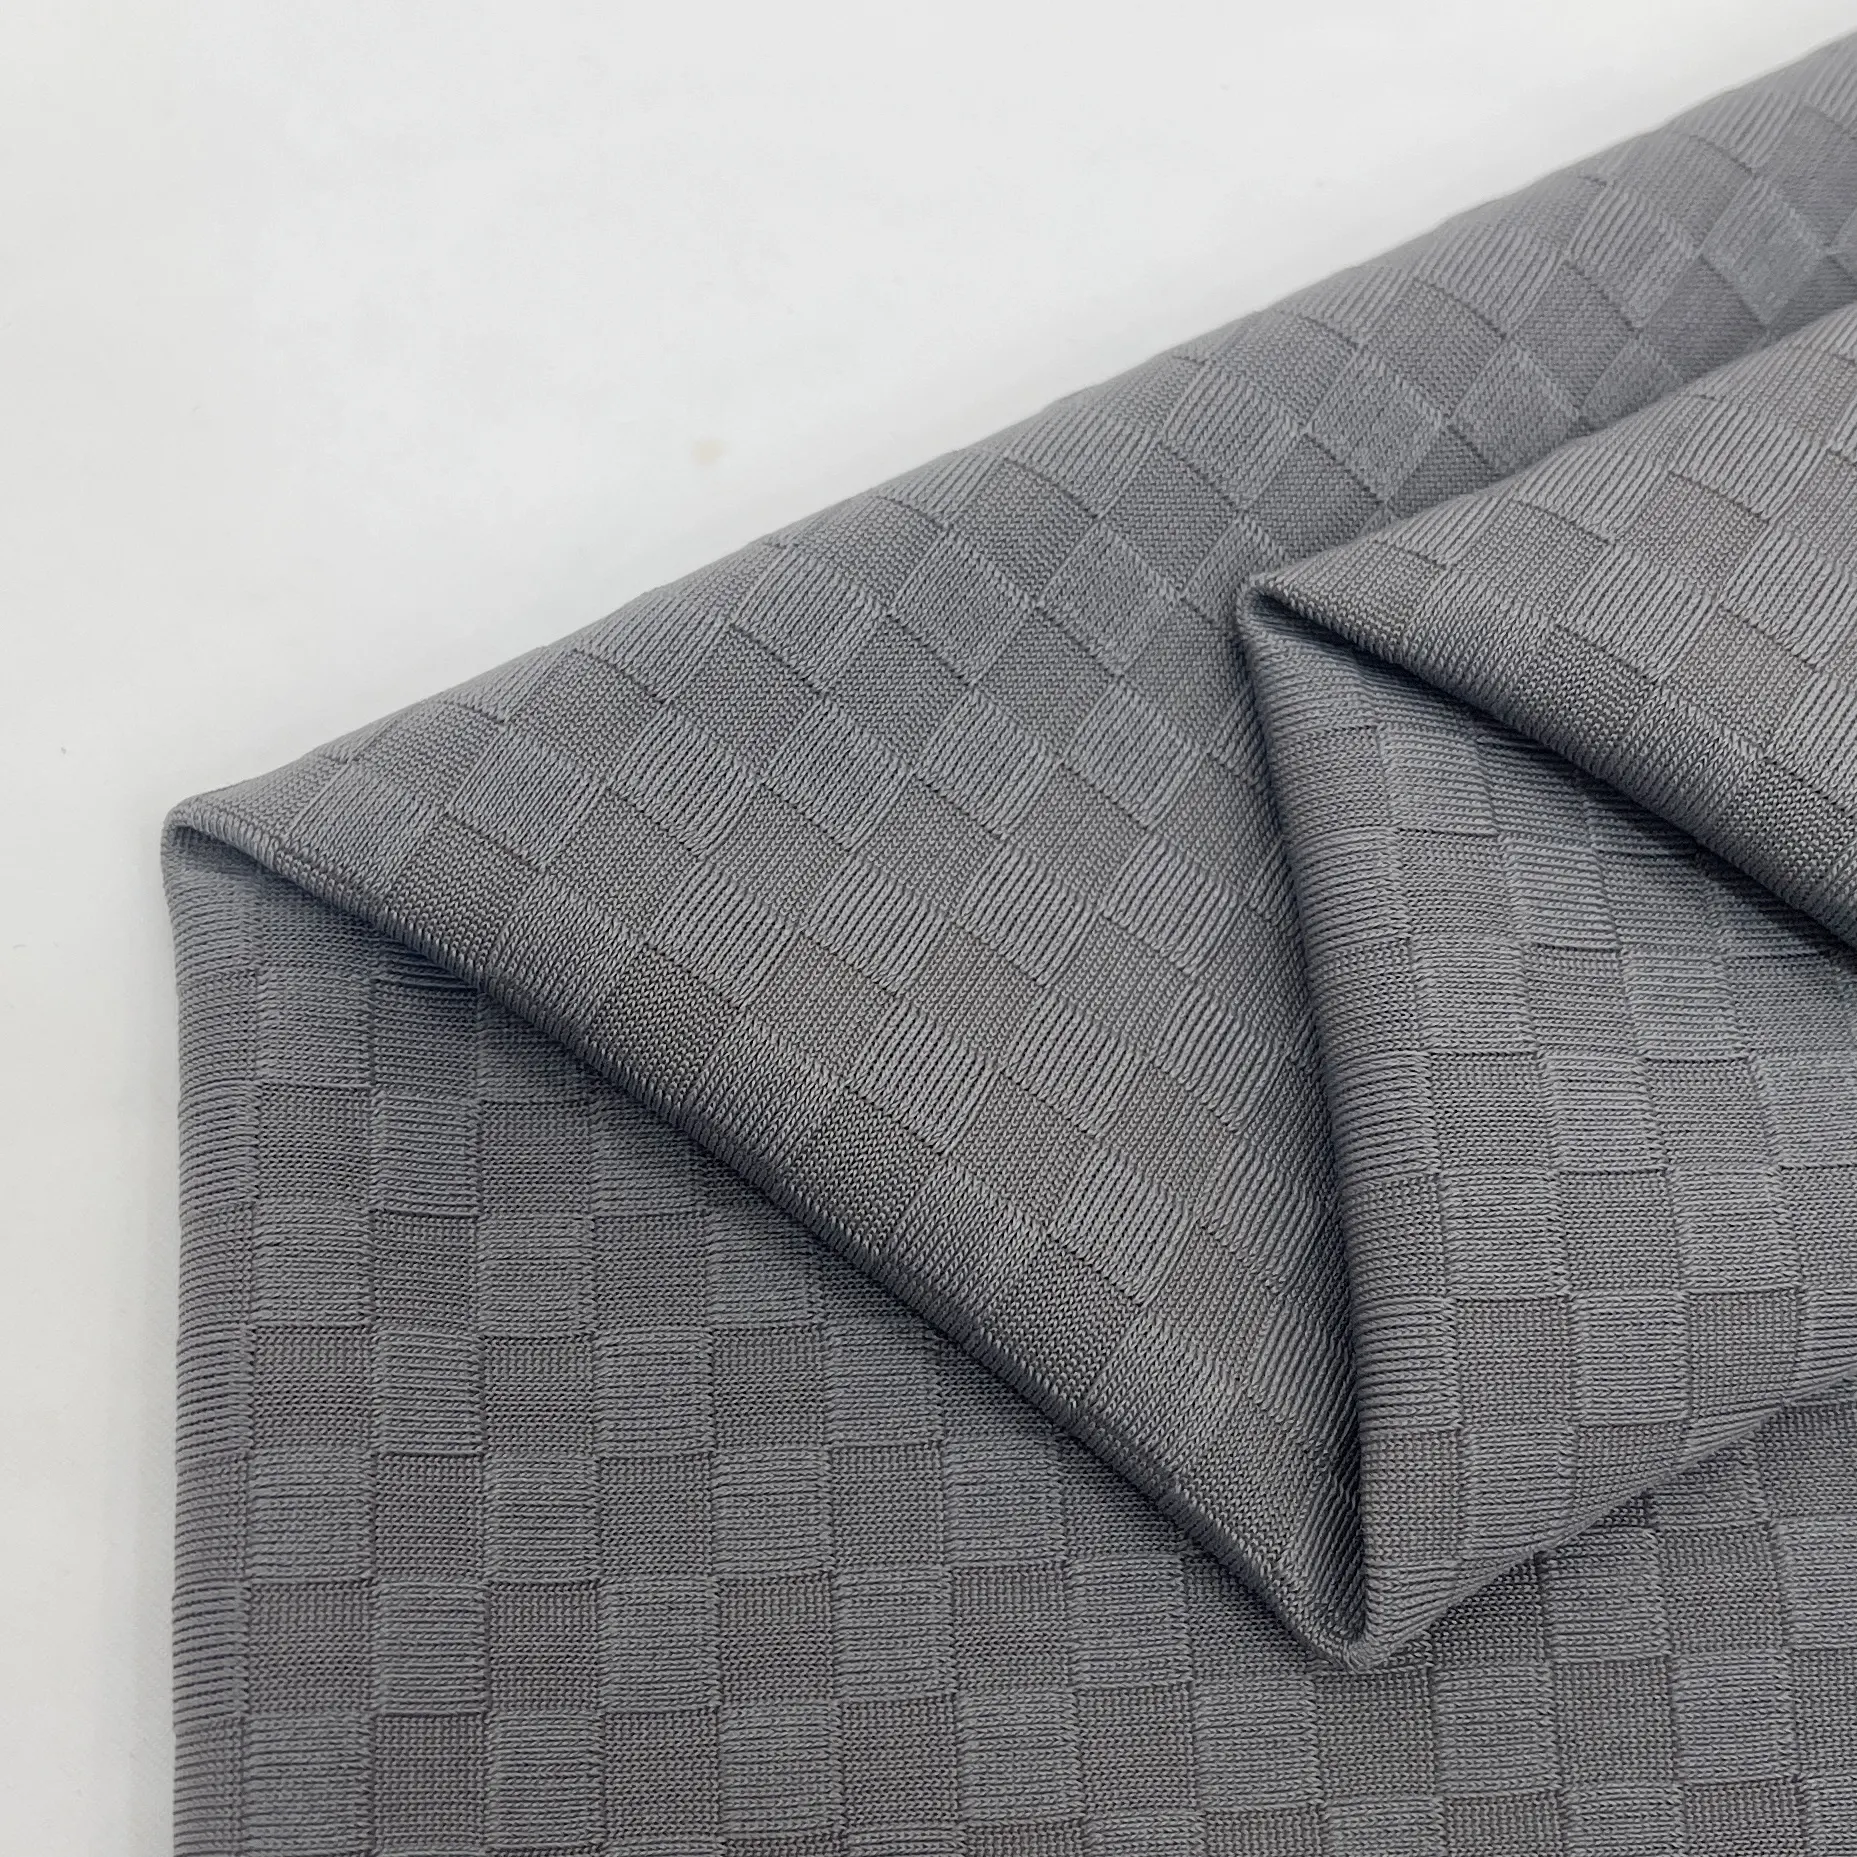 Tissu spandex en polyester respirant élastique extensible dans les 4 sens personnalisé en usine pour sous-vêtements de sport